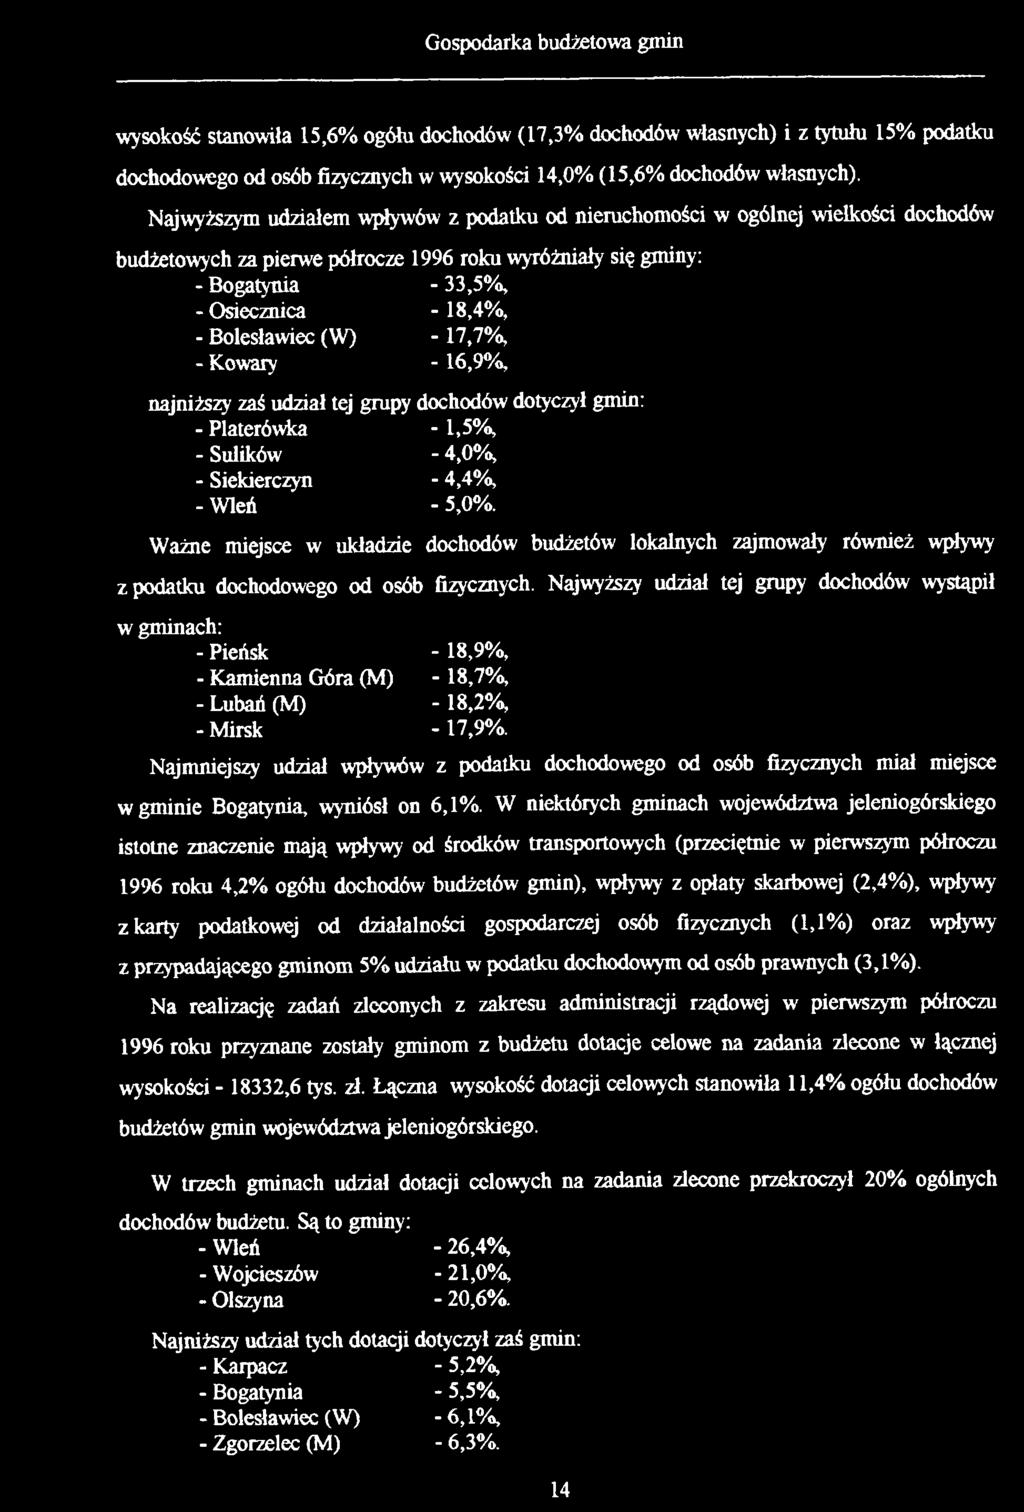 Bolesławiec (W) -17,7%, - Kowary - 16,9%, najniższy zaś udział tej grupy dochodów dotyczył gmin: - Platerówka - 1,5%, - Sulików - 4,0%, - Siekierczyn - 4,4%, - Wleń - 5,0%.